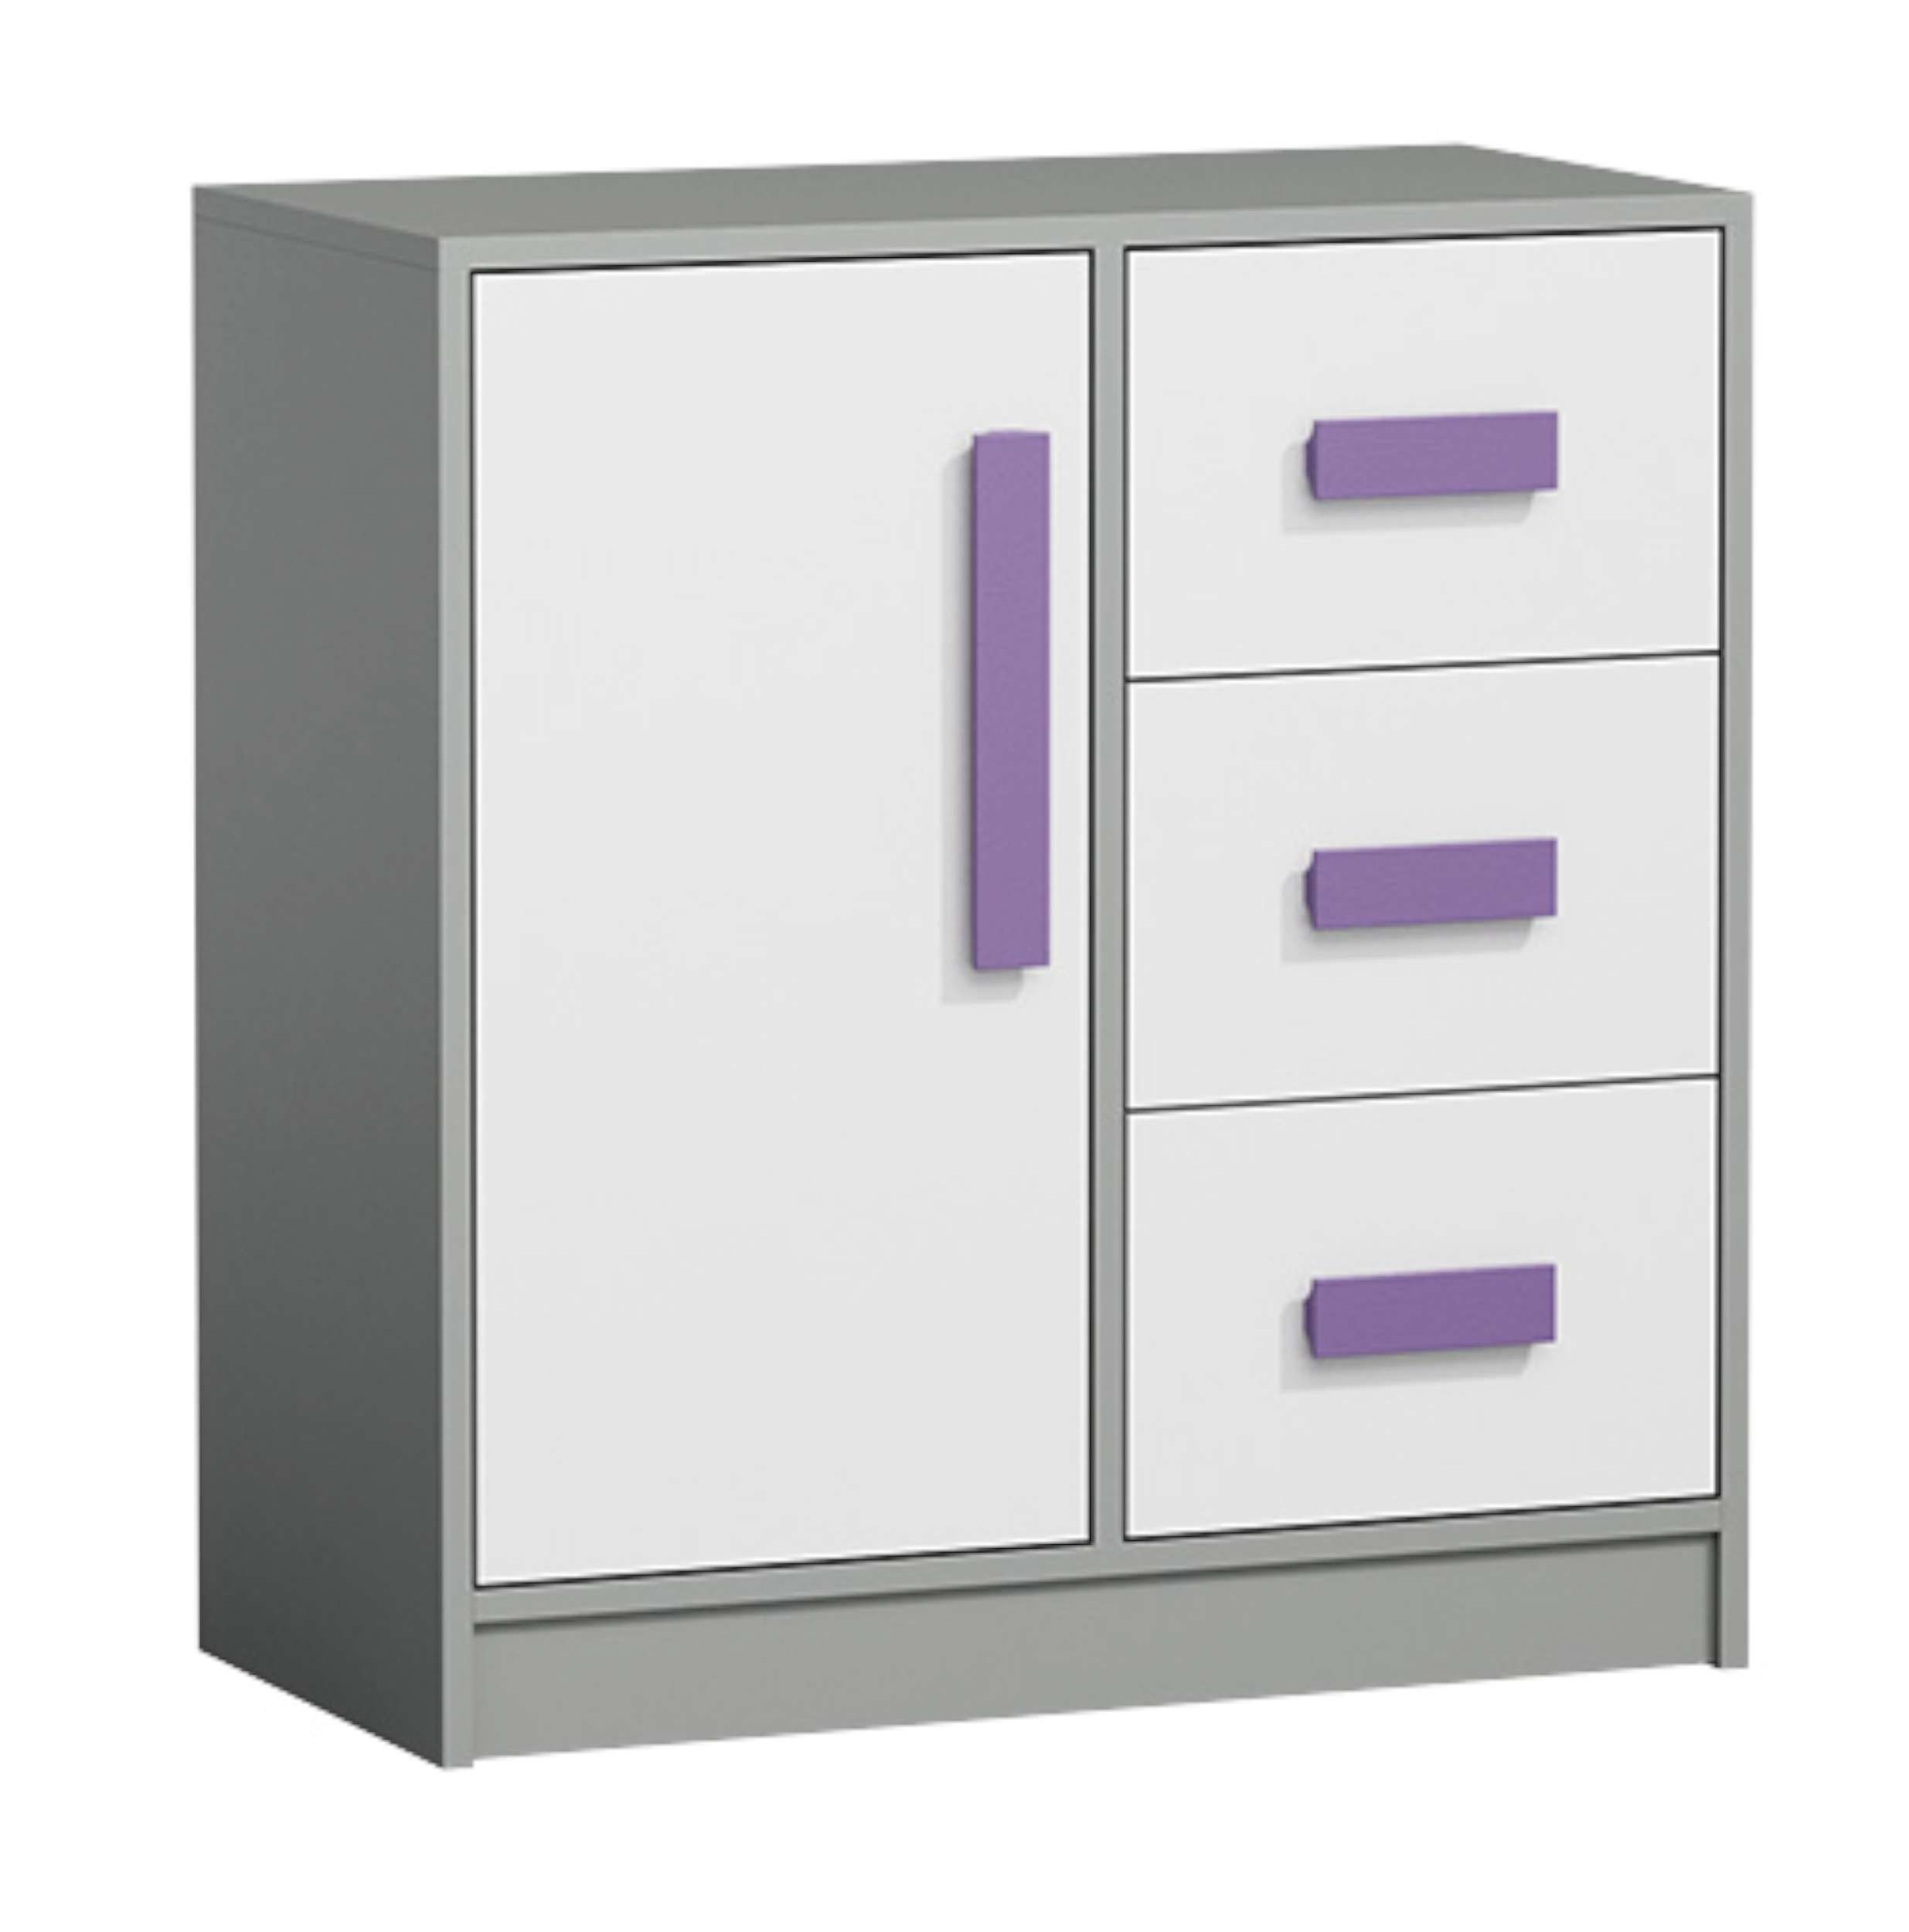 Stylefy Kinderkleiderschrank Gael III (Sideboard, Standschrank) mit Schubladen, Vollauszug, Modern Design, für Kinder Weiß - Grau - Violett